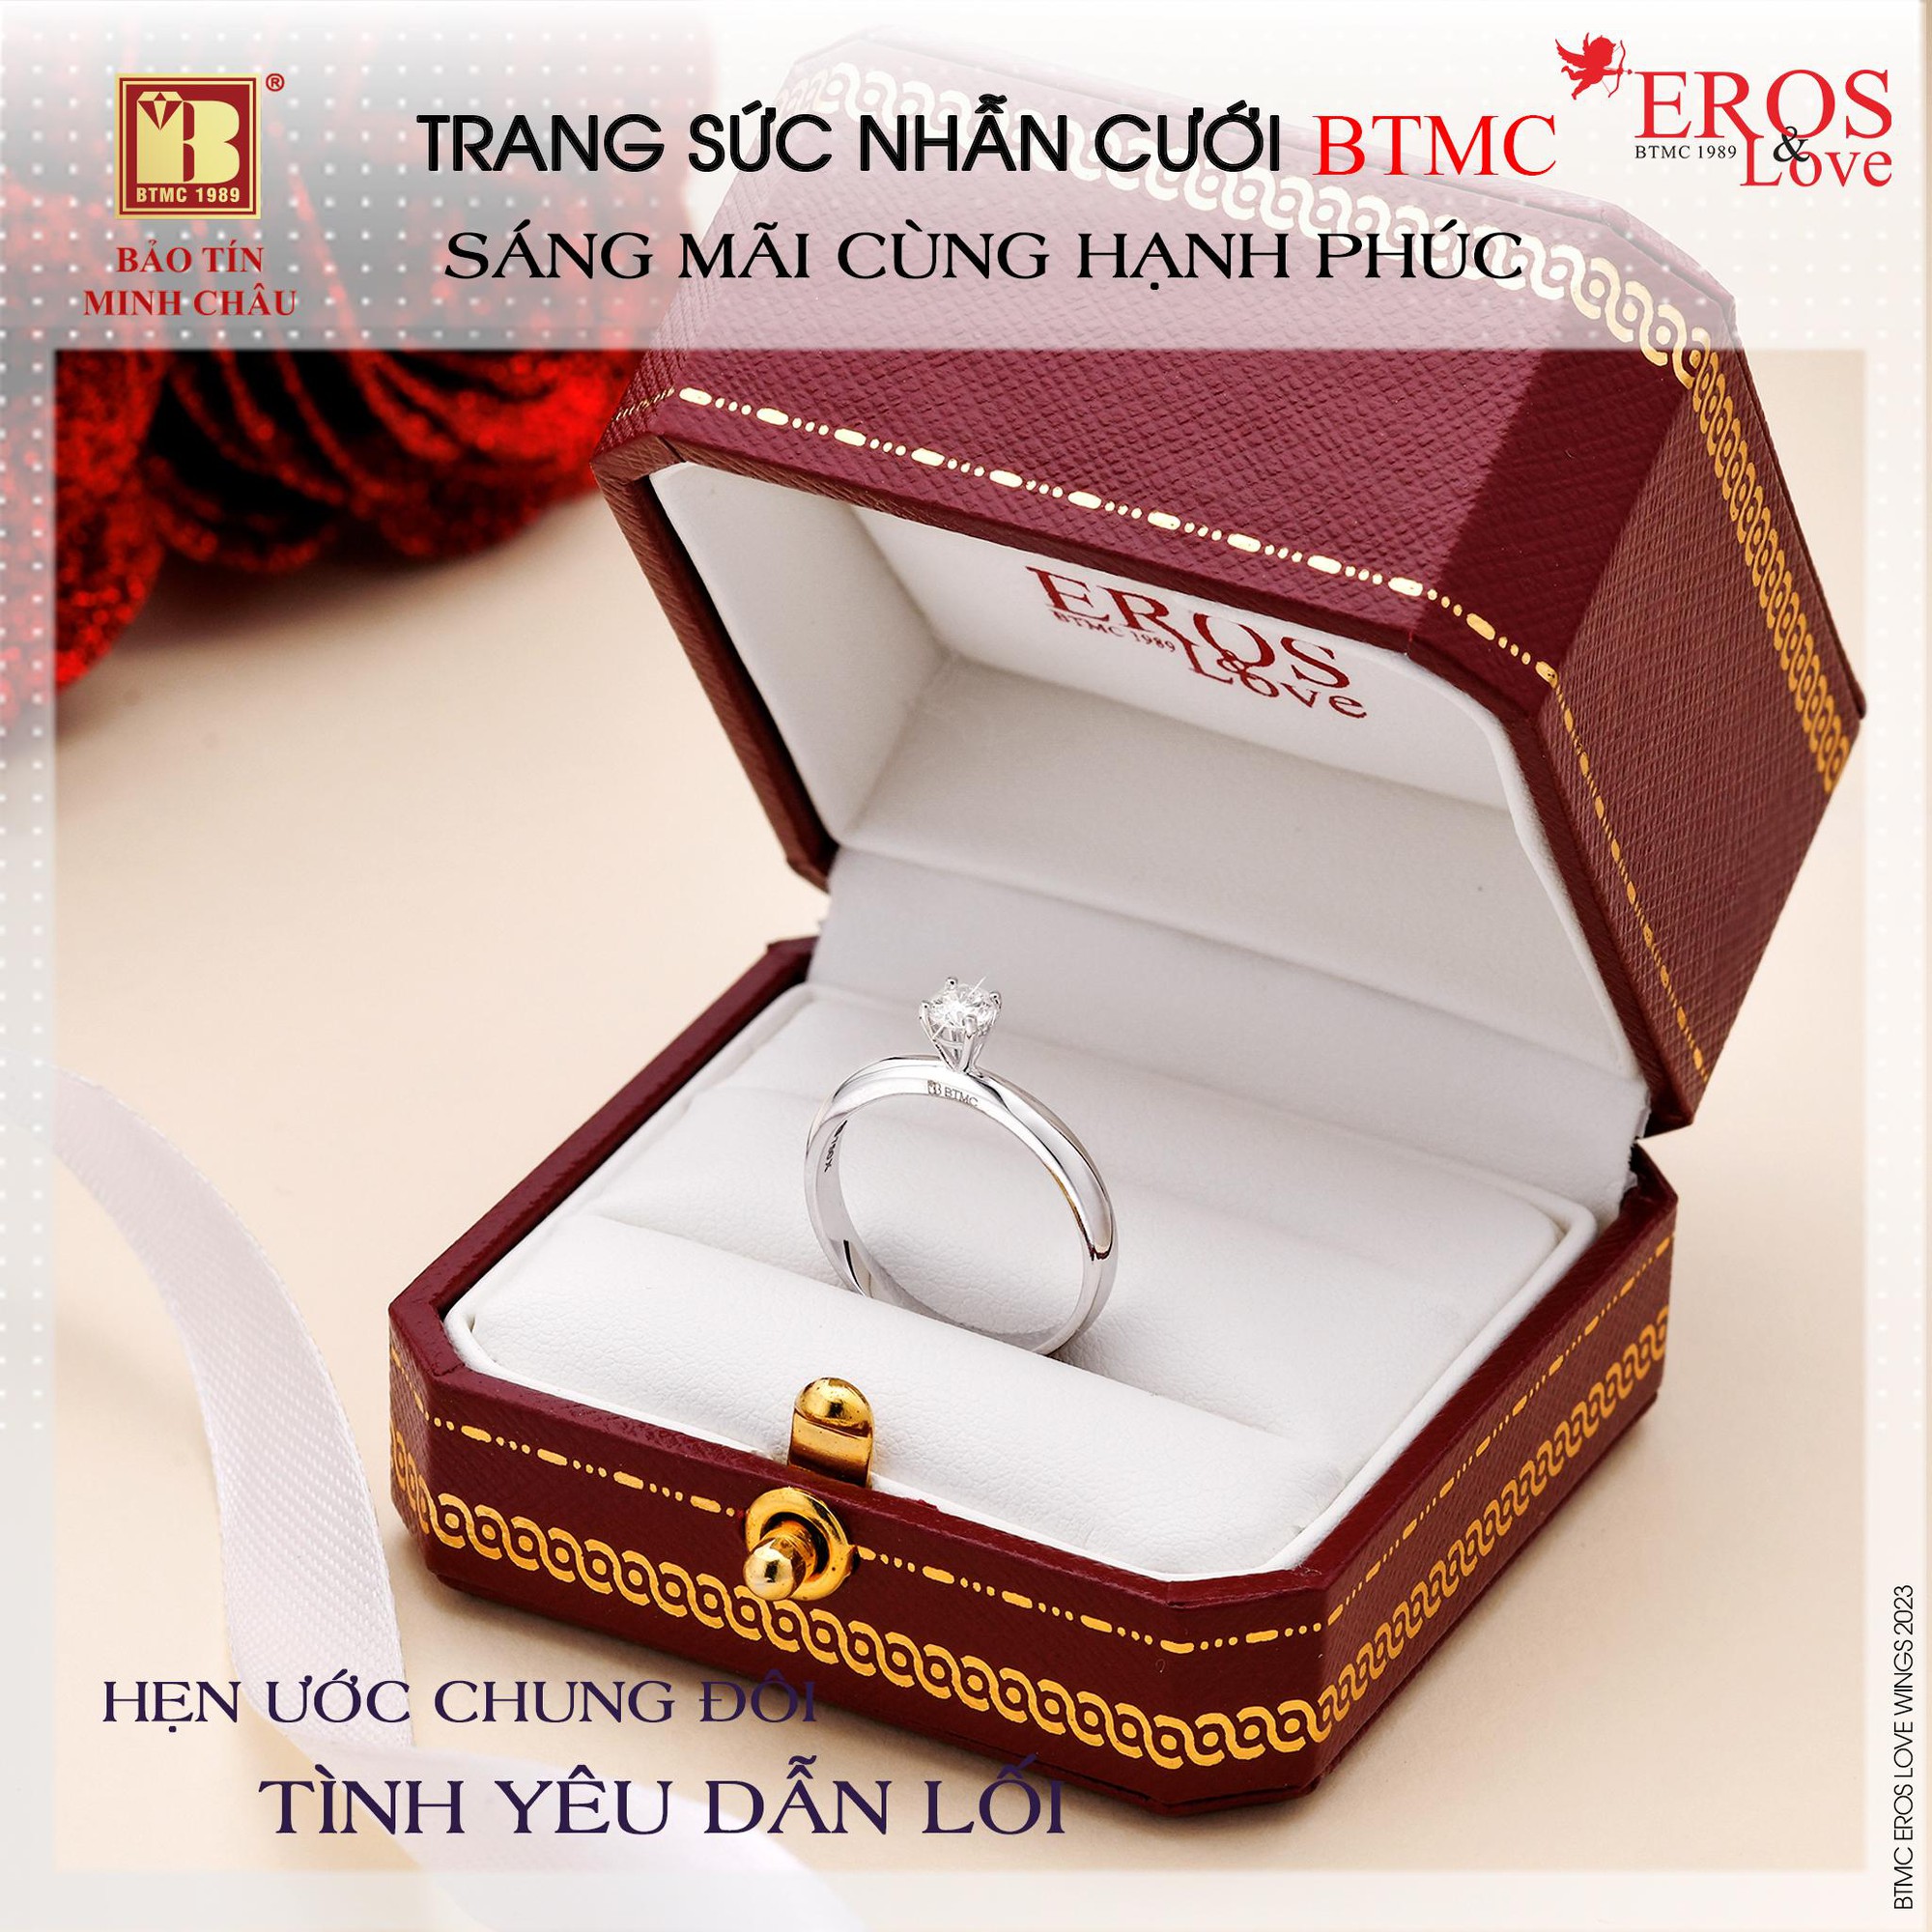 Bảo Tín Minh Châu ra mắt bộ sưu tập nhẫn cưới, trang sức cưới với ưu đãi tới 1 tỷ đồng - Ảnh 2.